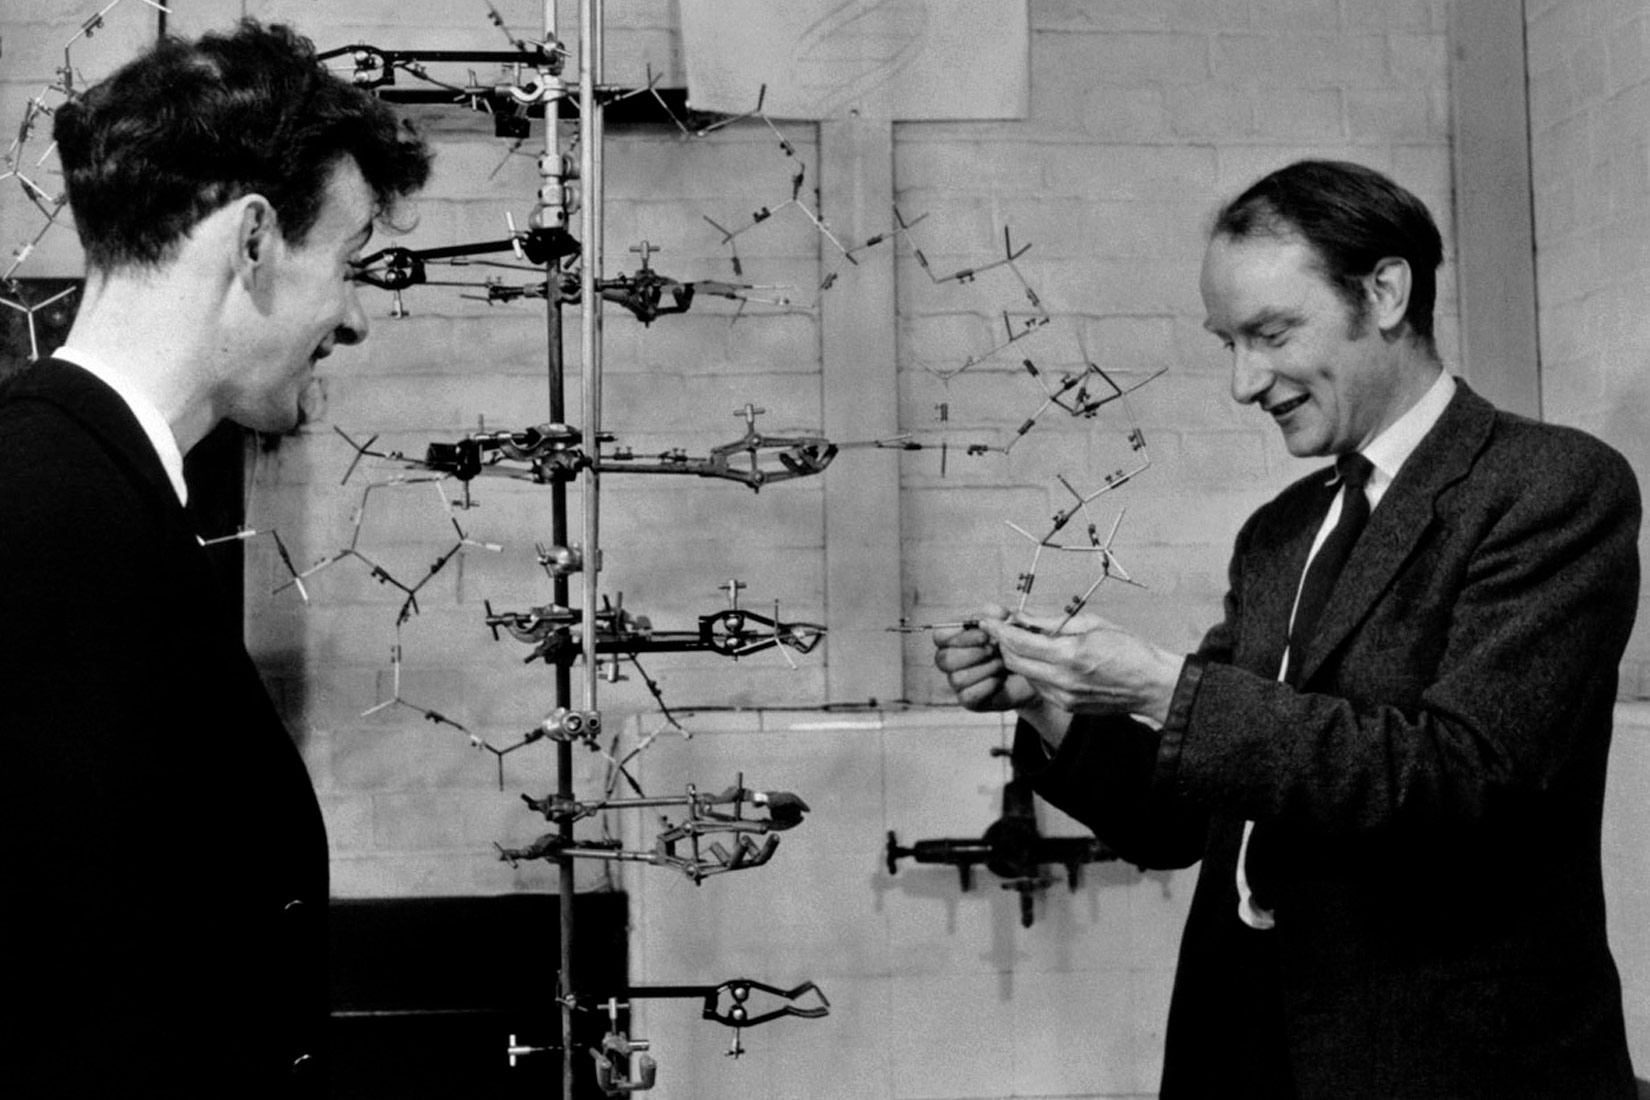 Fotografija prikazuje znanstvenike James Watsona i Francis Cricka. Na lijevoj strani stoji James Watson, a na desnoj Francis Crick, oboje obučeni u odjela. Između njih se nalazi model DNA koji znanstvenici u tom trenutku sastavljaju.